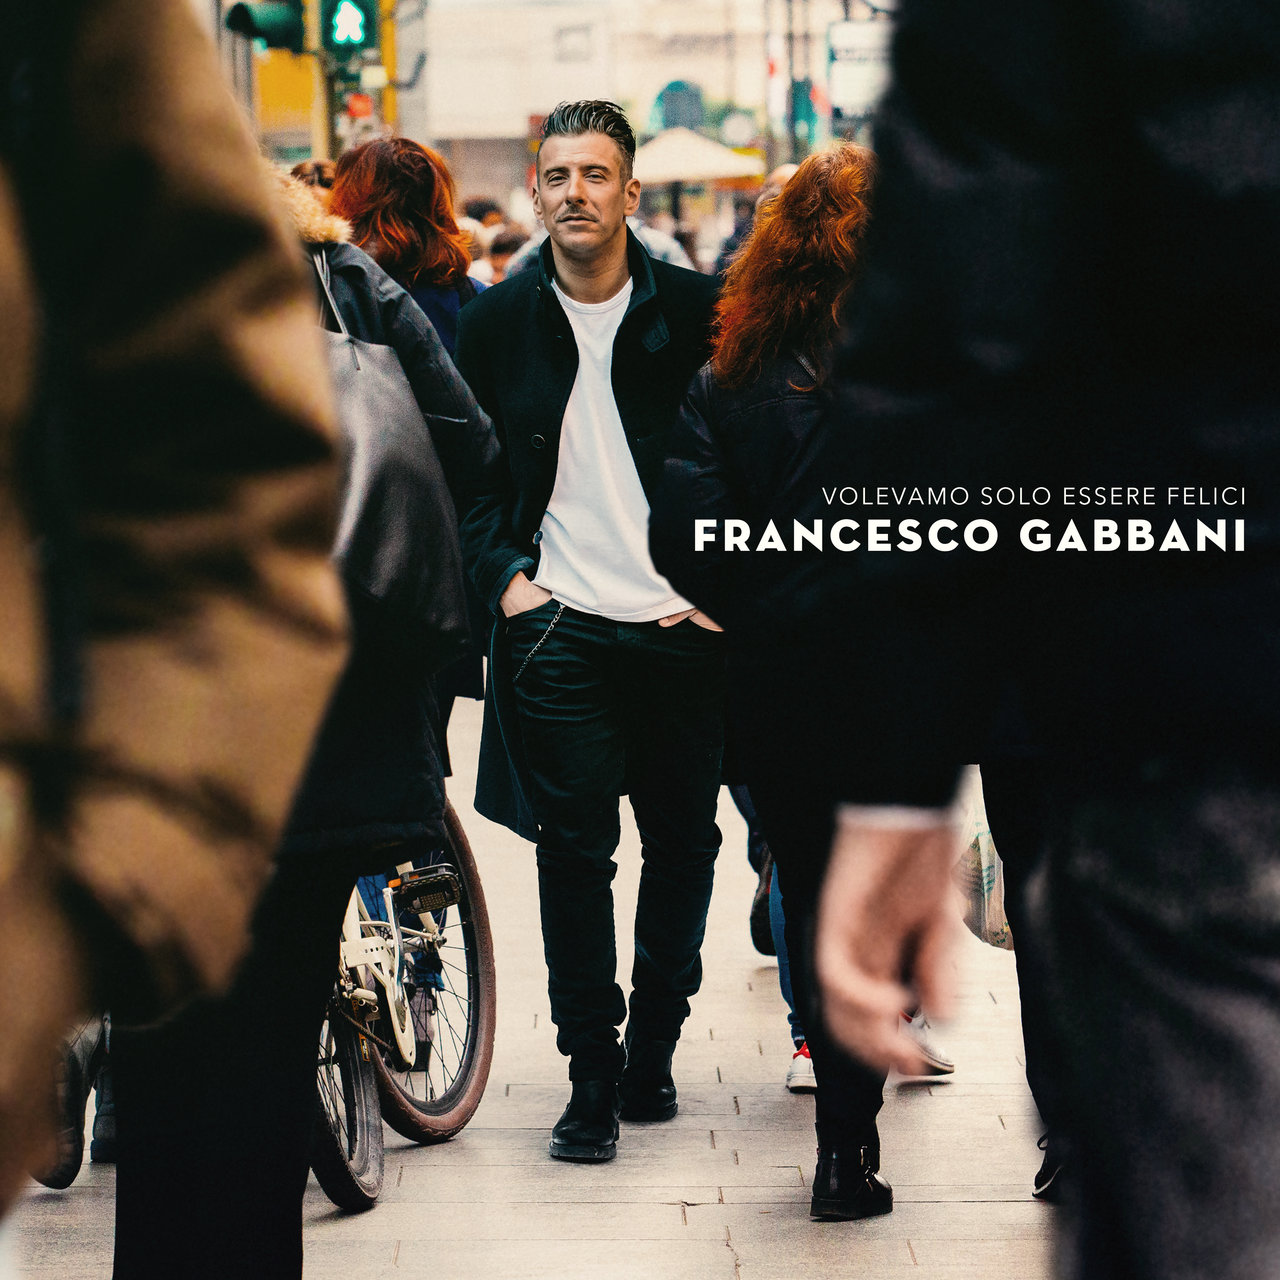 Francesco Gabbani Volevamo solo essere felici cover artwork